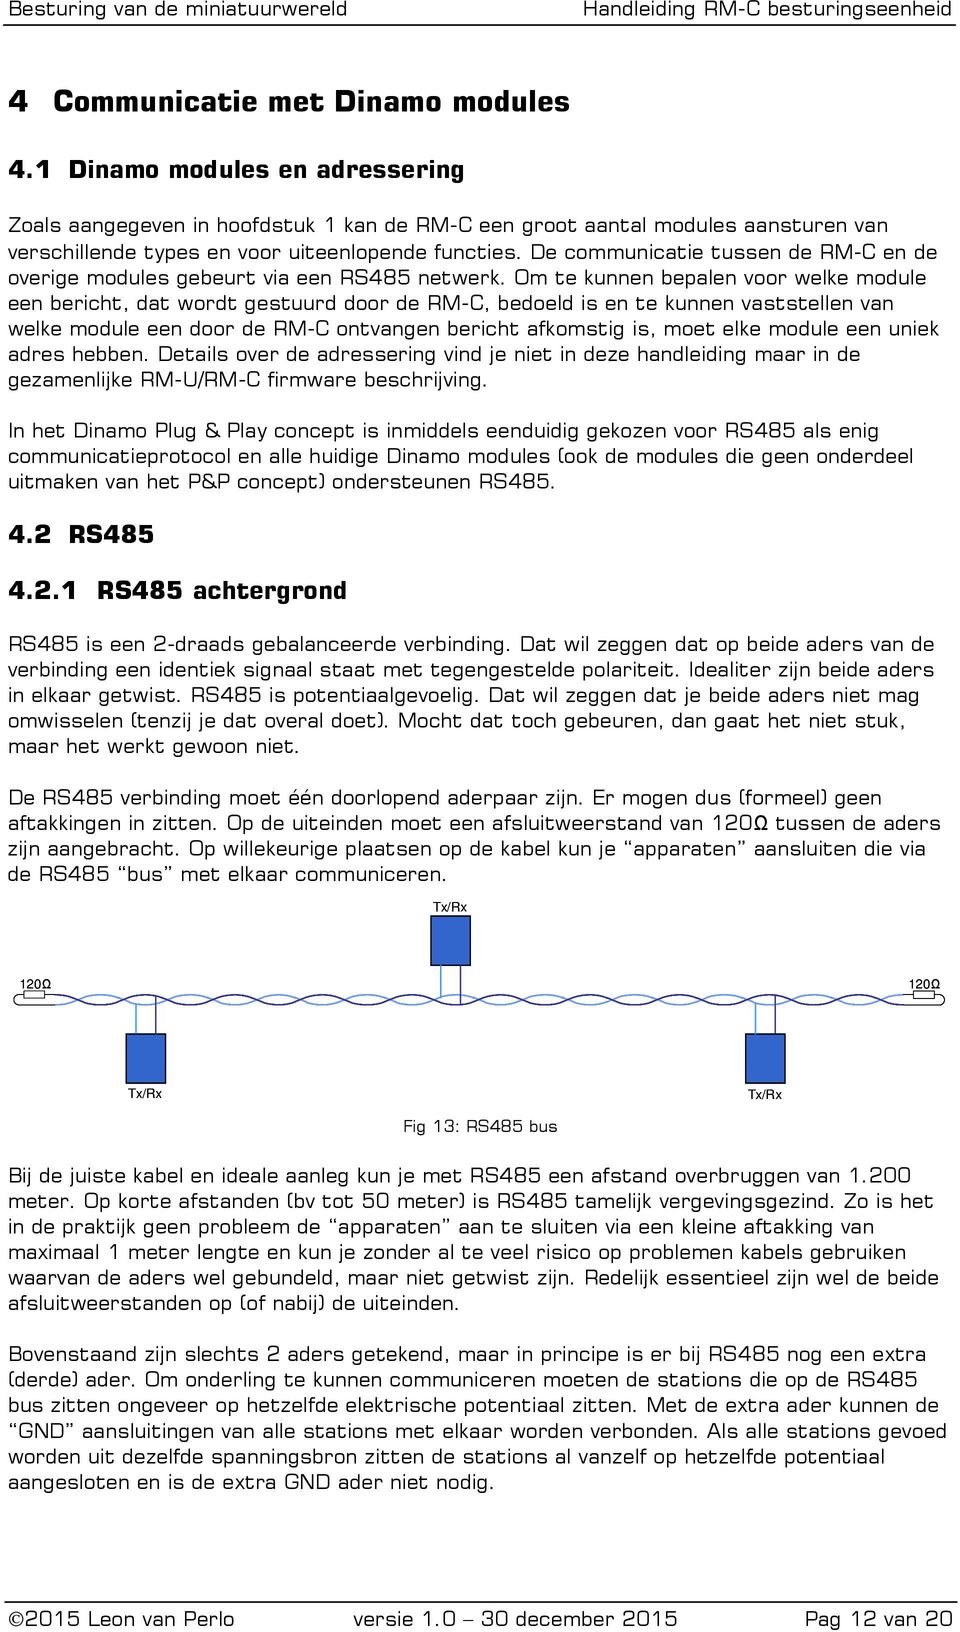 De communicatie tussen de RM-C en de overige modules gebeurt via een RS485 netwerk.